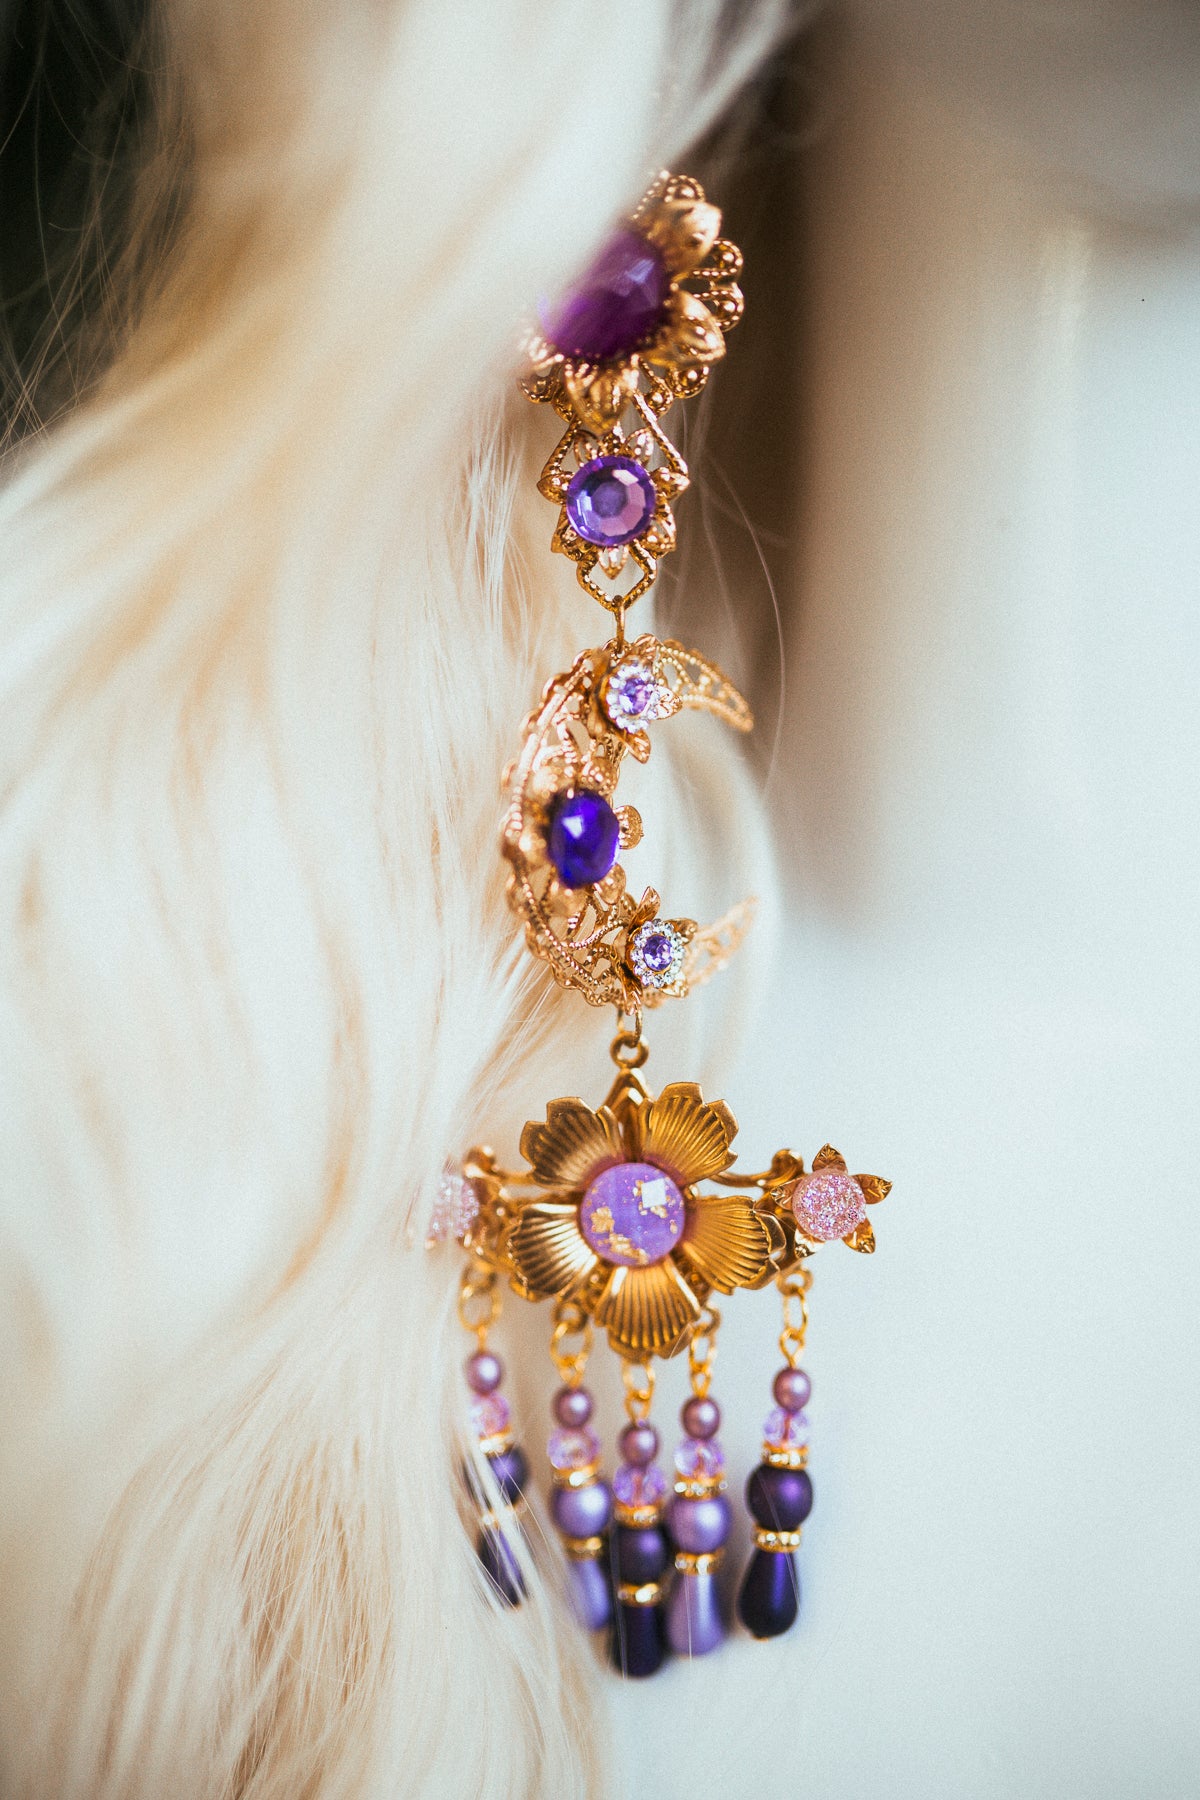 Purple Flower Earrings